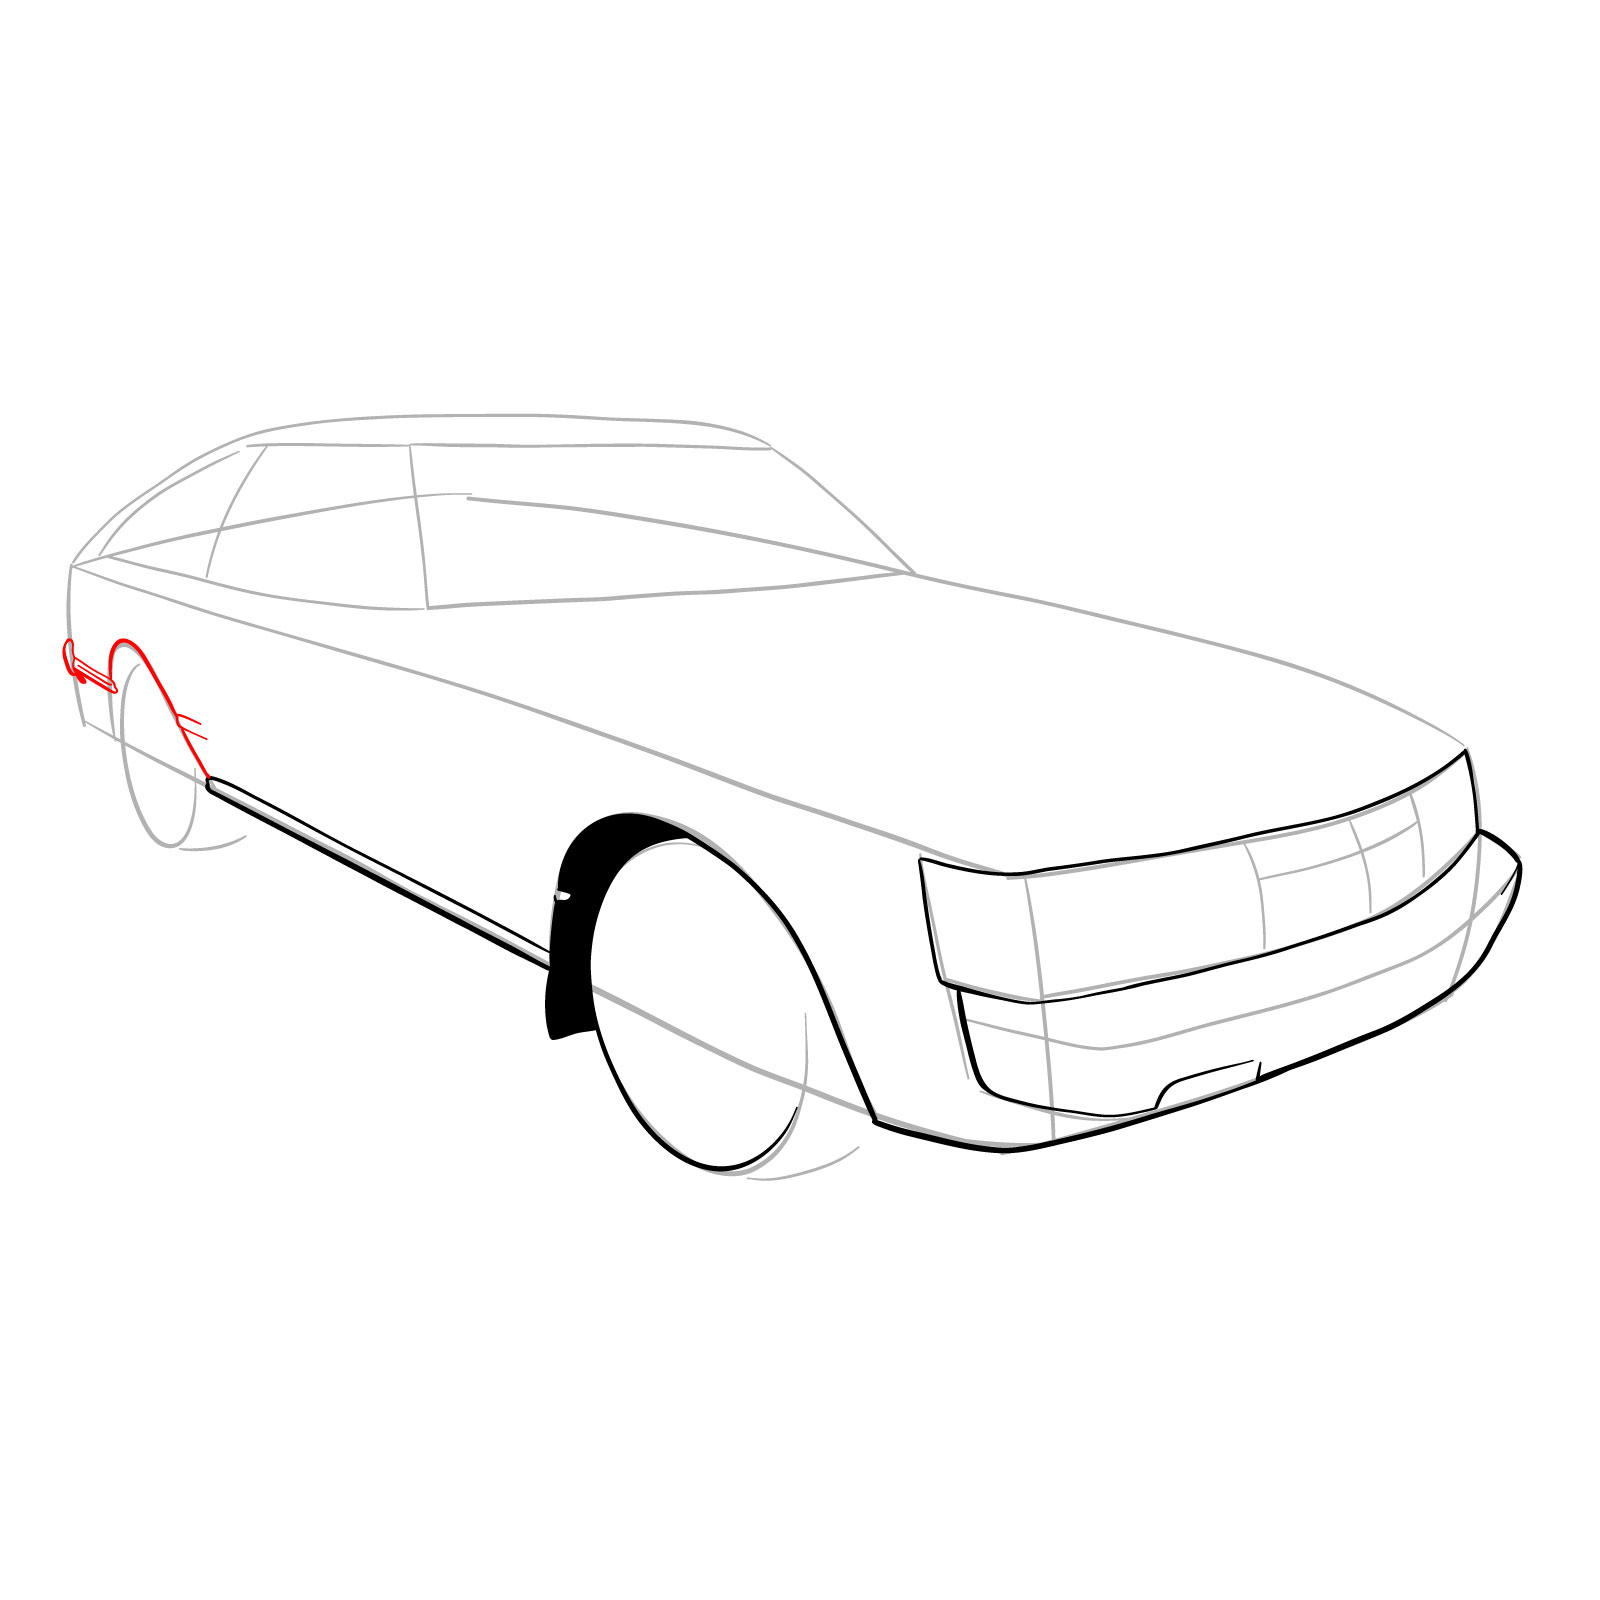 How to draw a 1979 Toyota Celica Supra Mk I Coupe - step 10